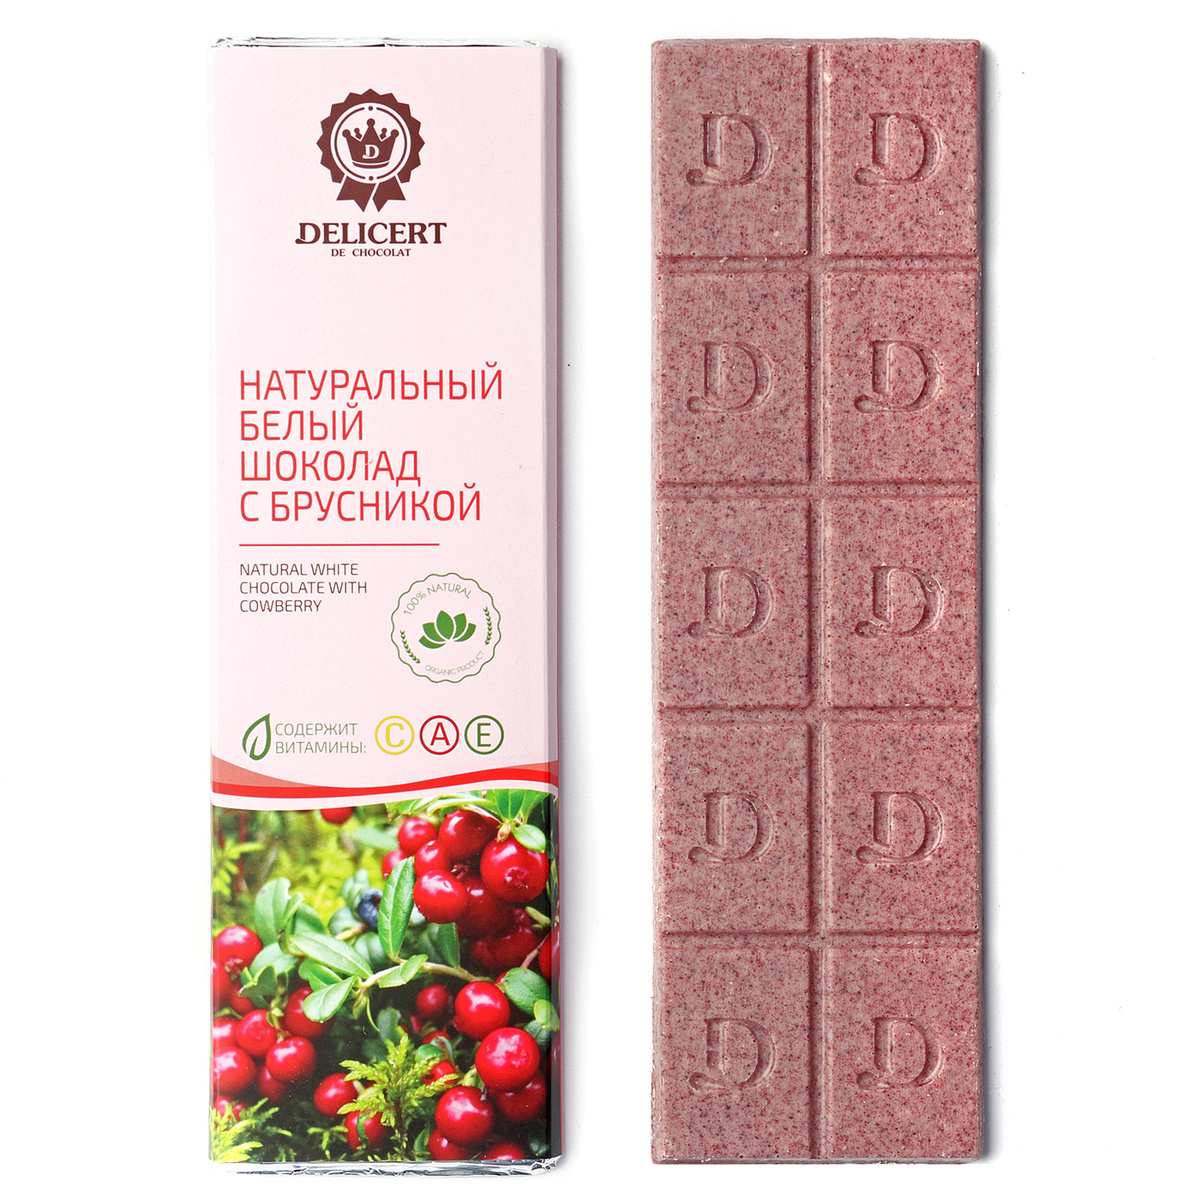 Белый шоколад Delicert плитка, с сублимированной брусникой/натуральный/65 гр  #1